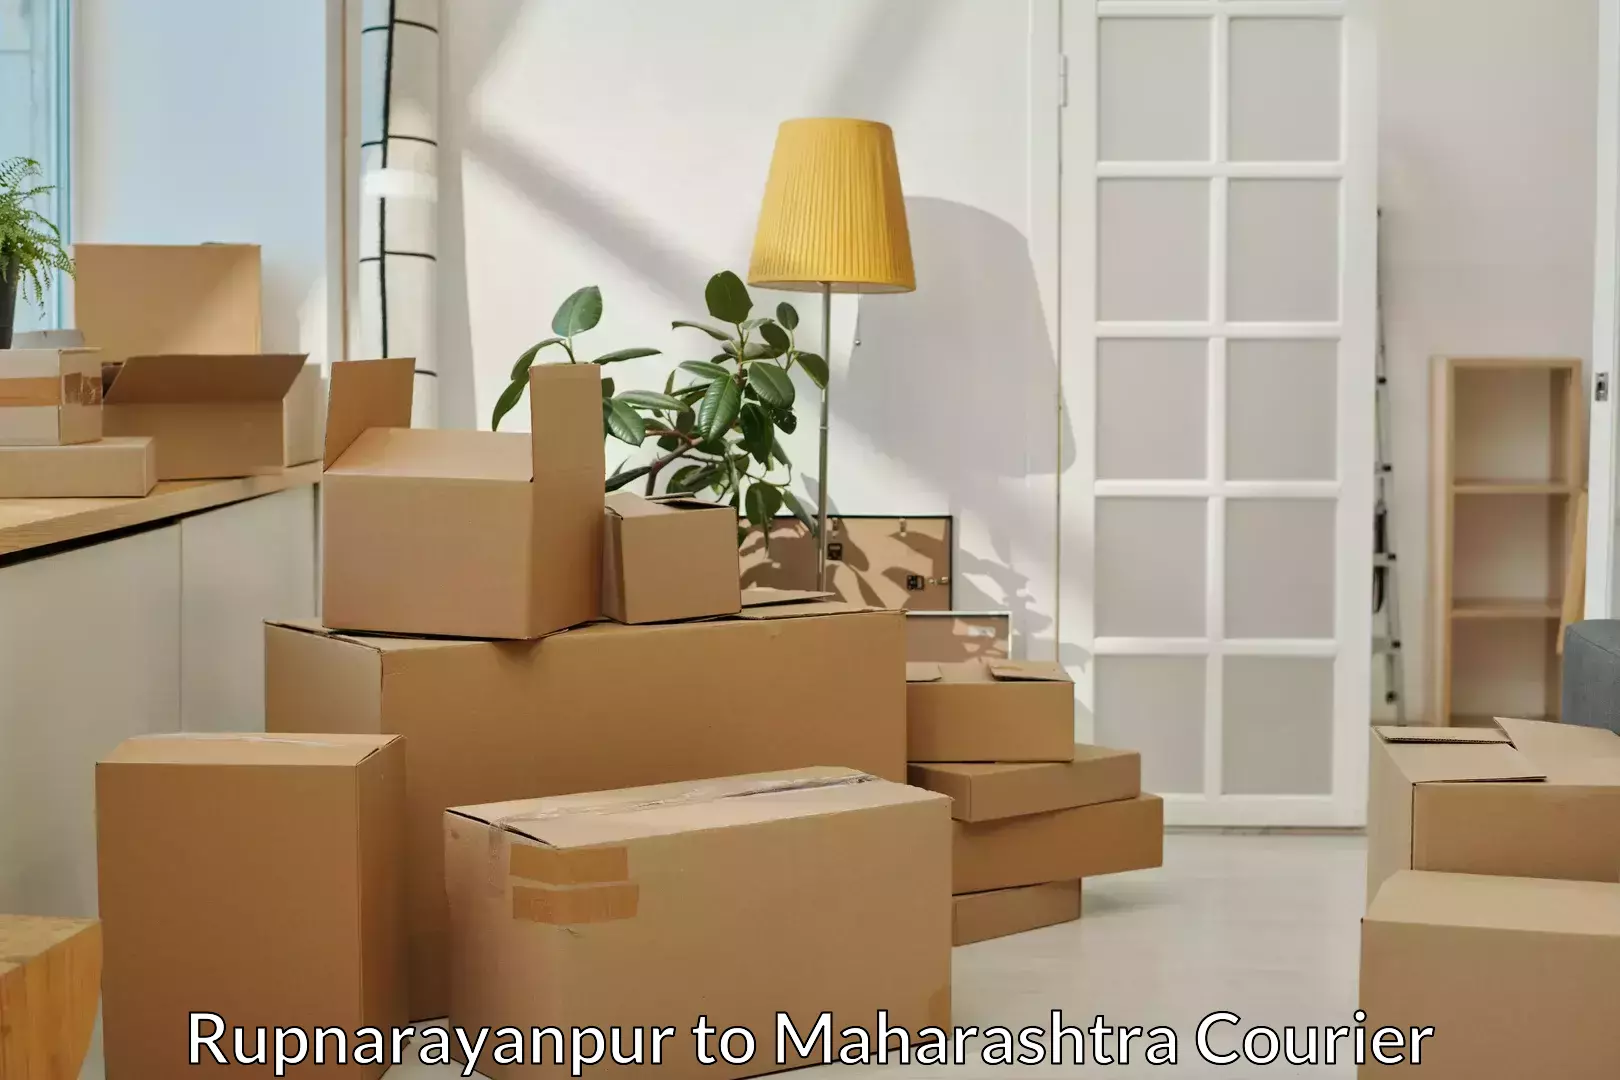 Furniture moving experts Rupnarayanpur to Nashik